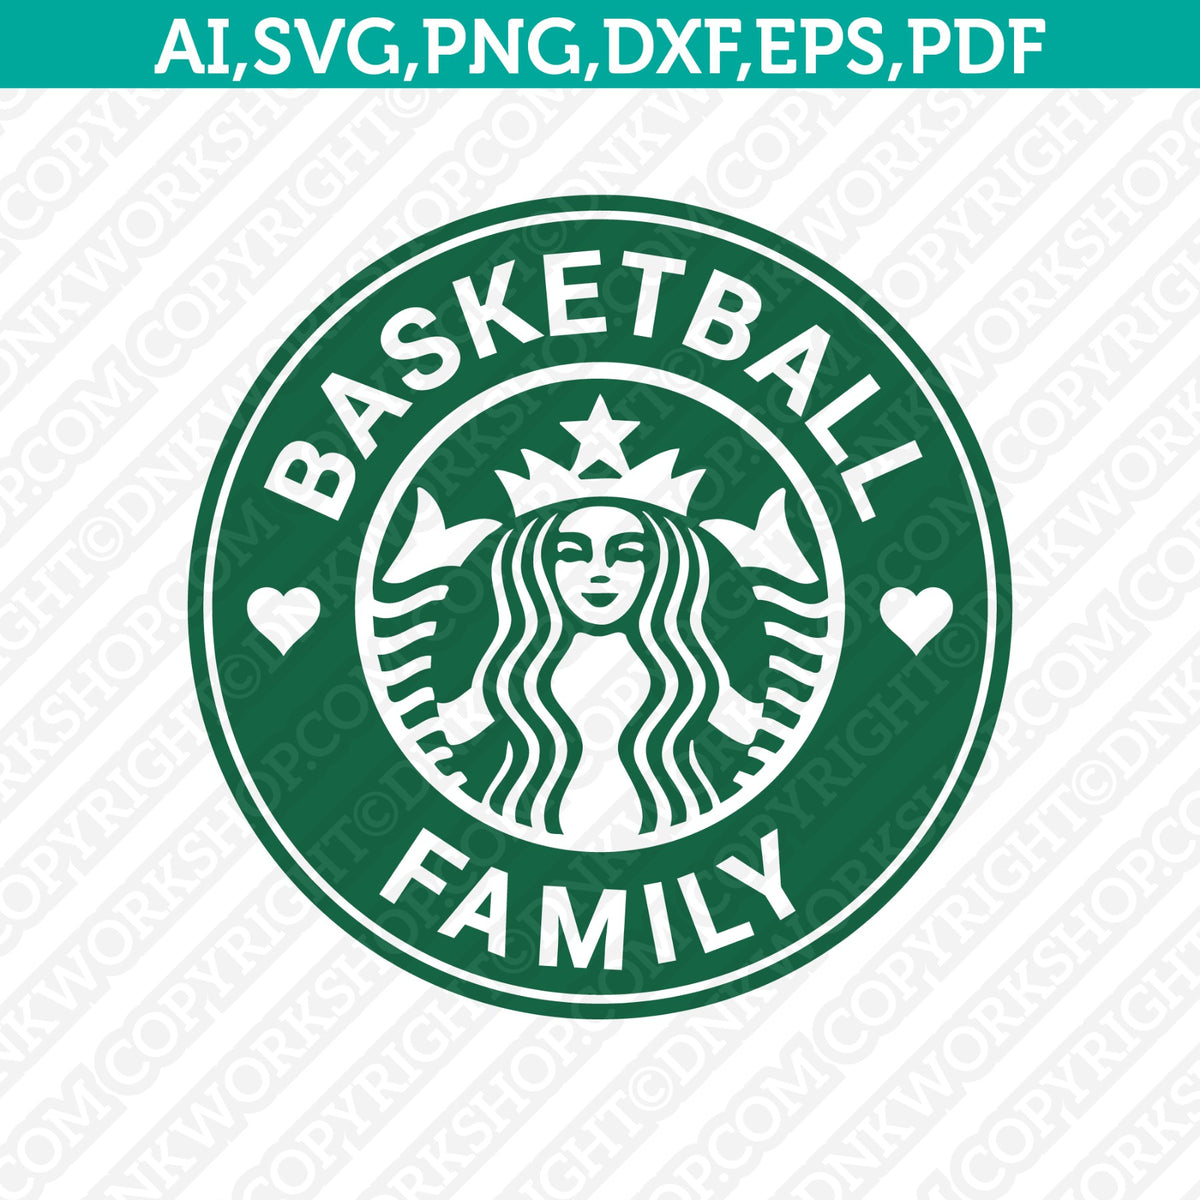 Boston Celtics - Machine Embroidery designs and SVG files